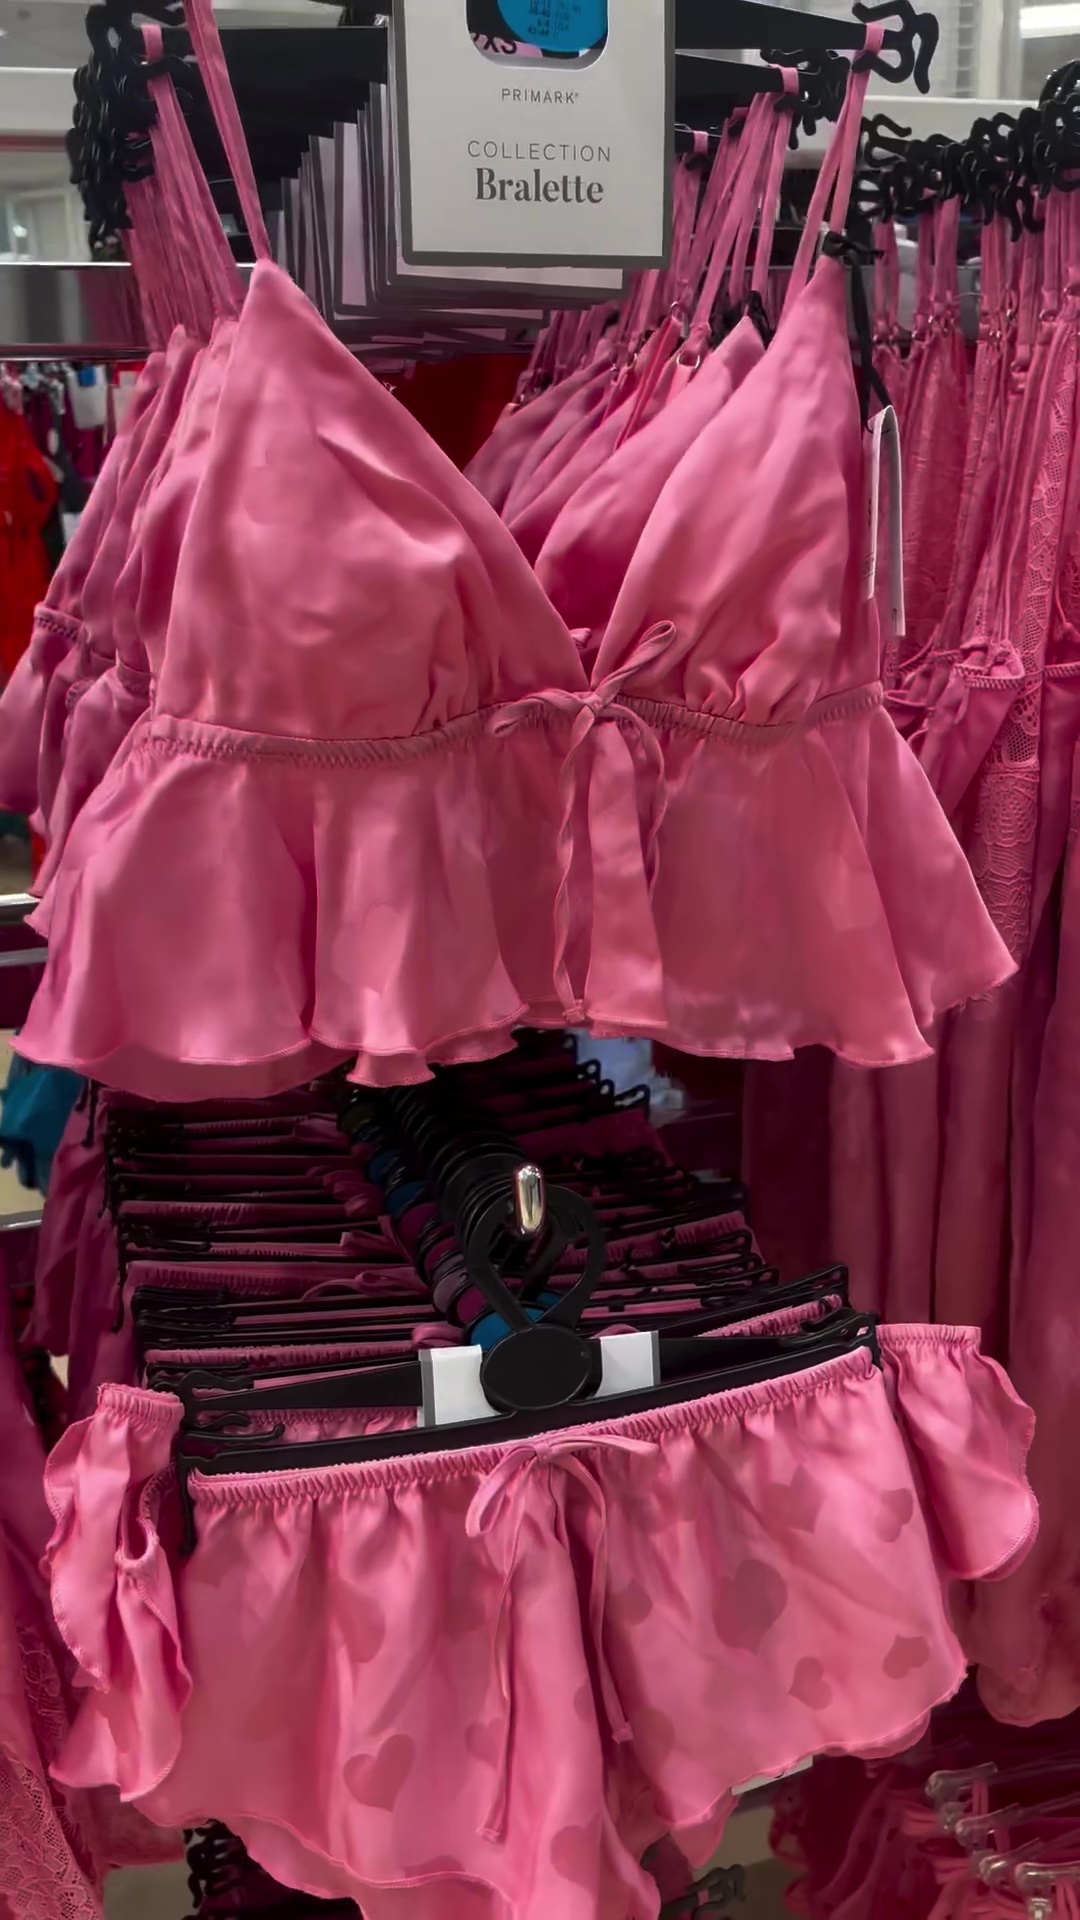 Sie haben auch passende rosa Sets